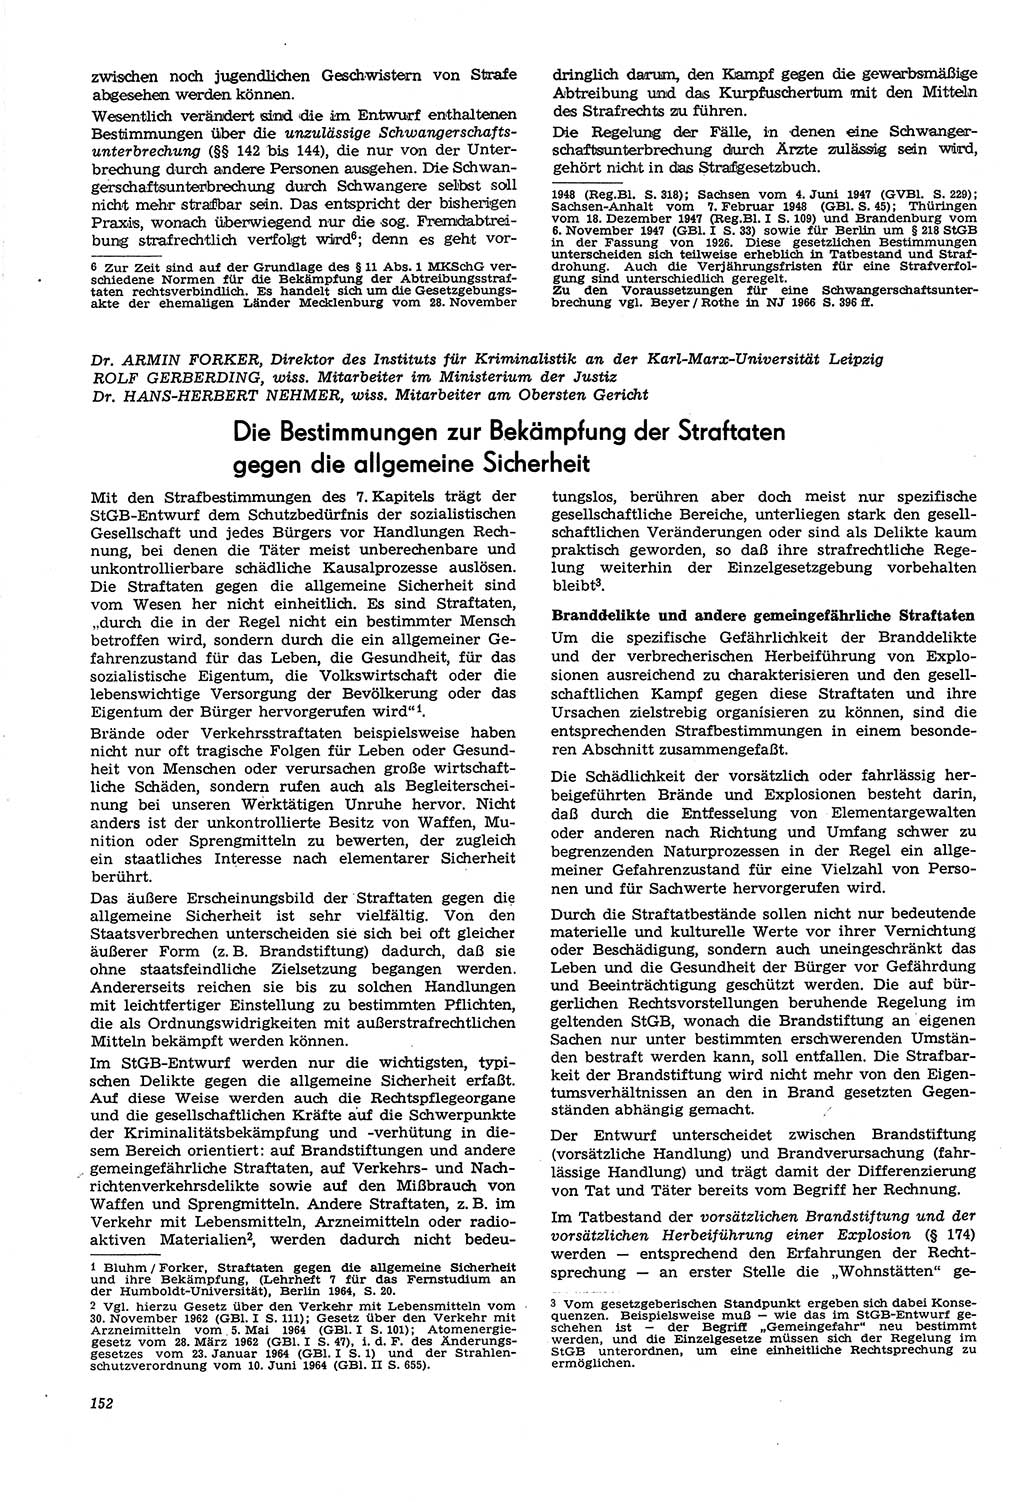 Neue Justiz (NJ), Zeitschrift für Recht und Rechtswissenschaft [Deutsche Demokratische Republik (DDR)], 21. Jahrgang 1967, Seite 152 (NJ DDR 1967, S. 152)